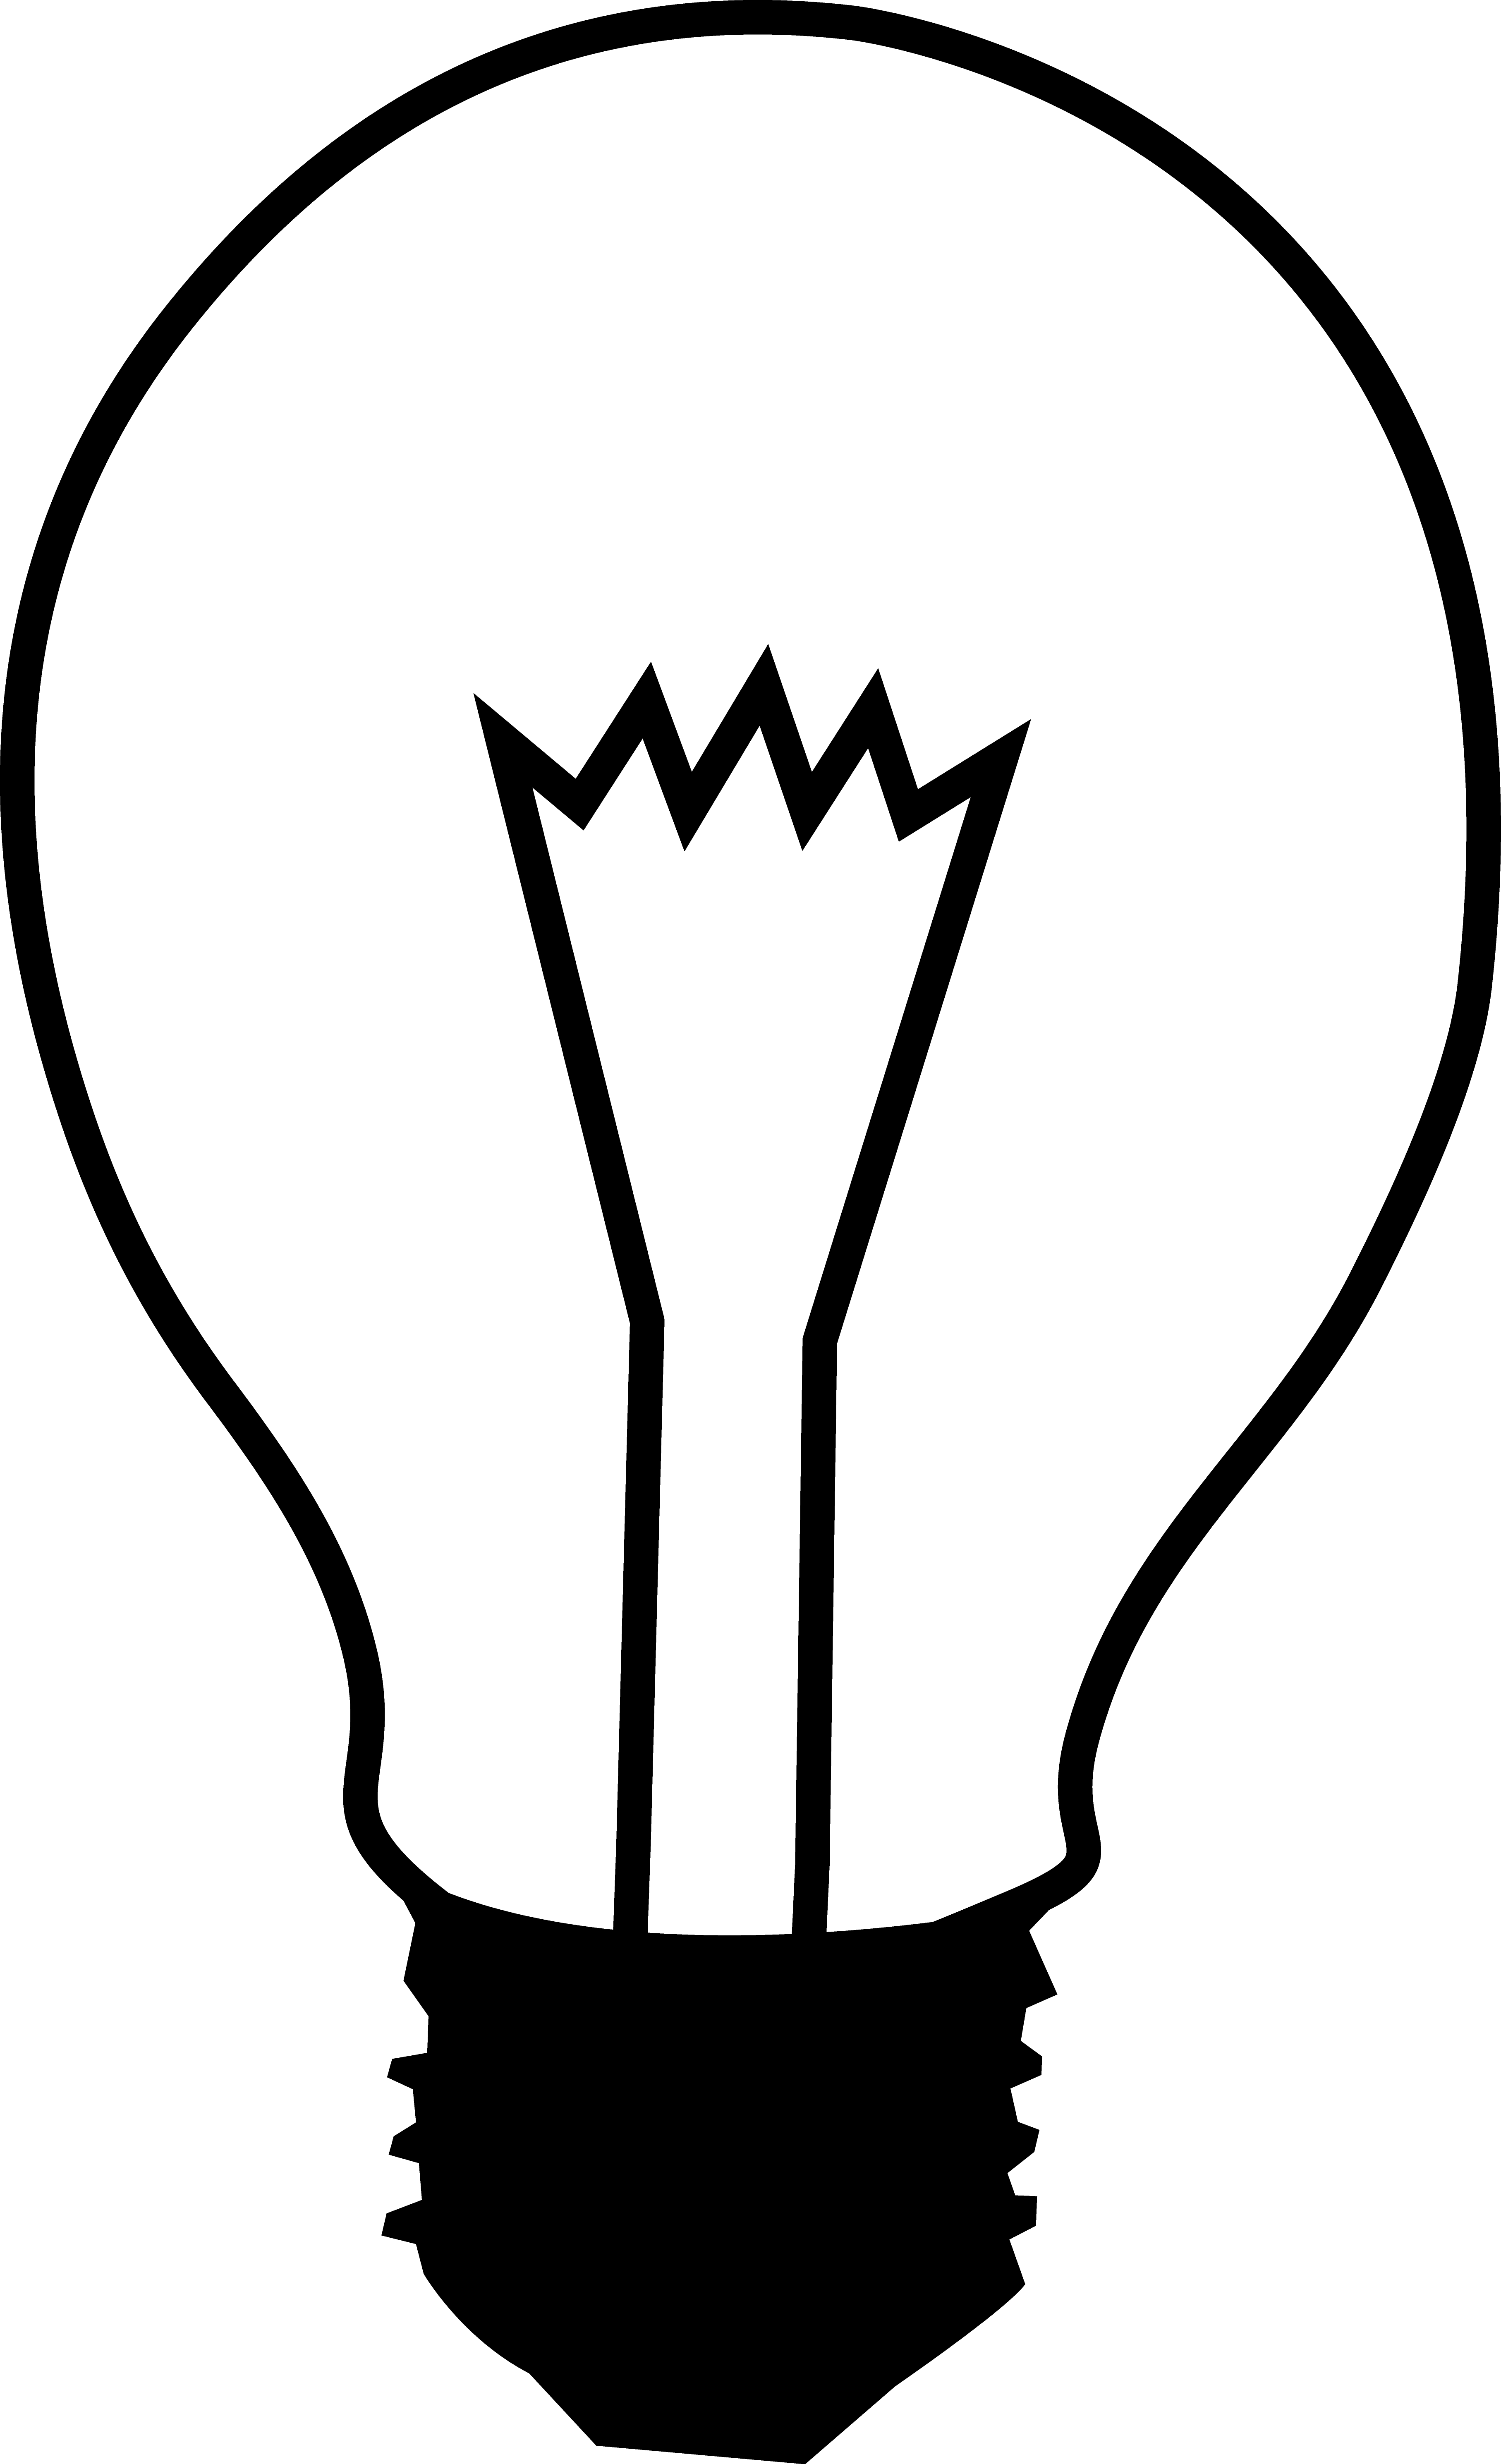 Light Bulbs Drawing Clipart Best